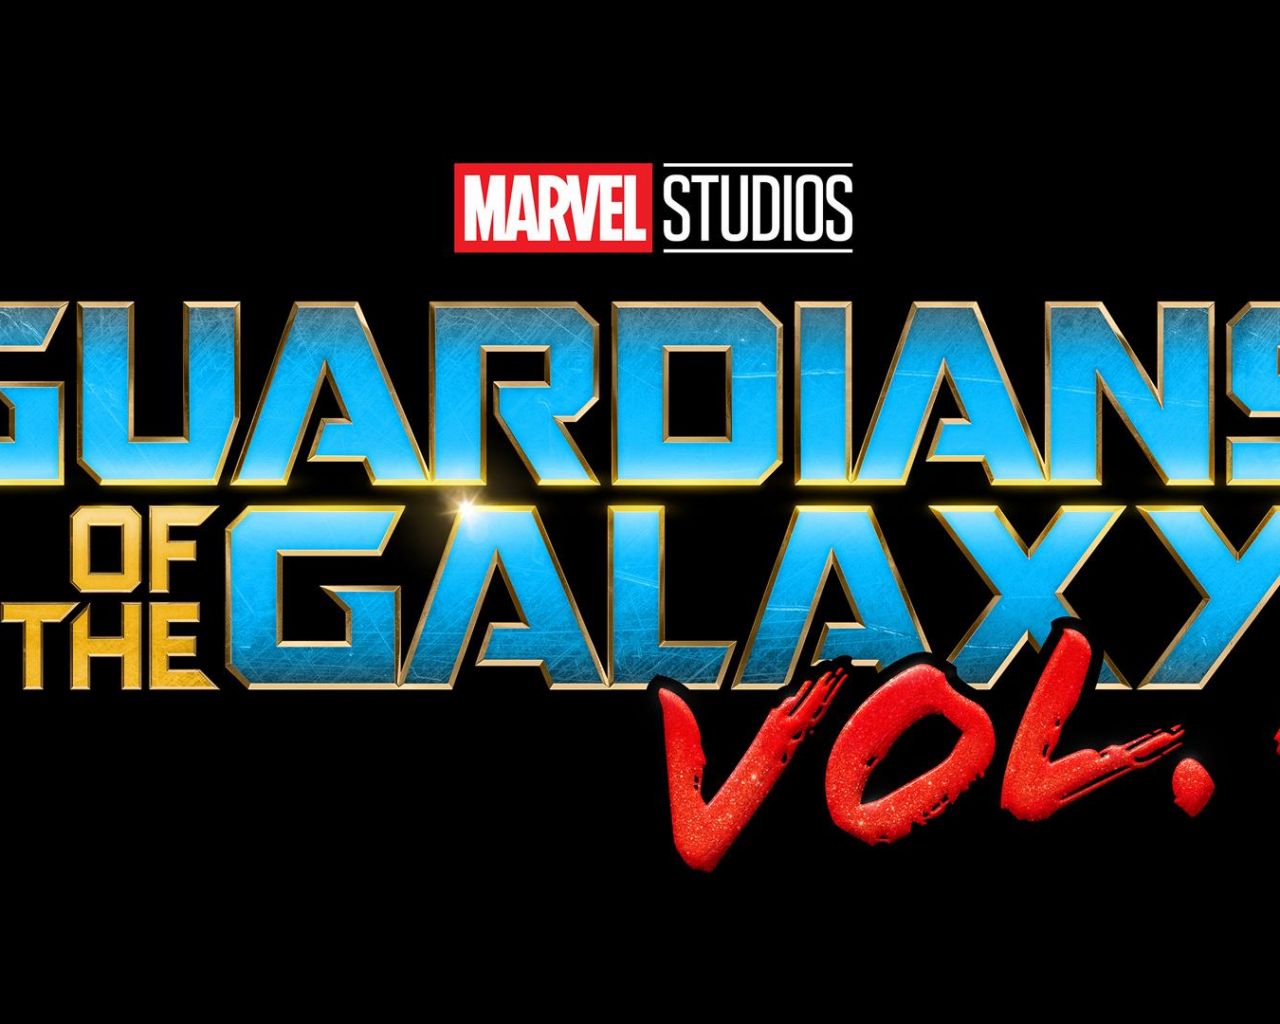 Фильм Стражи Галактики. Часть 2 | Guardians of the Galaxy Vol. 2 - лучшие обои для рабочего стола